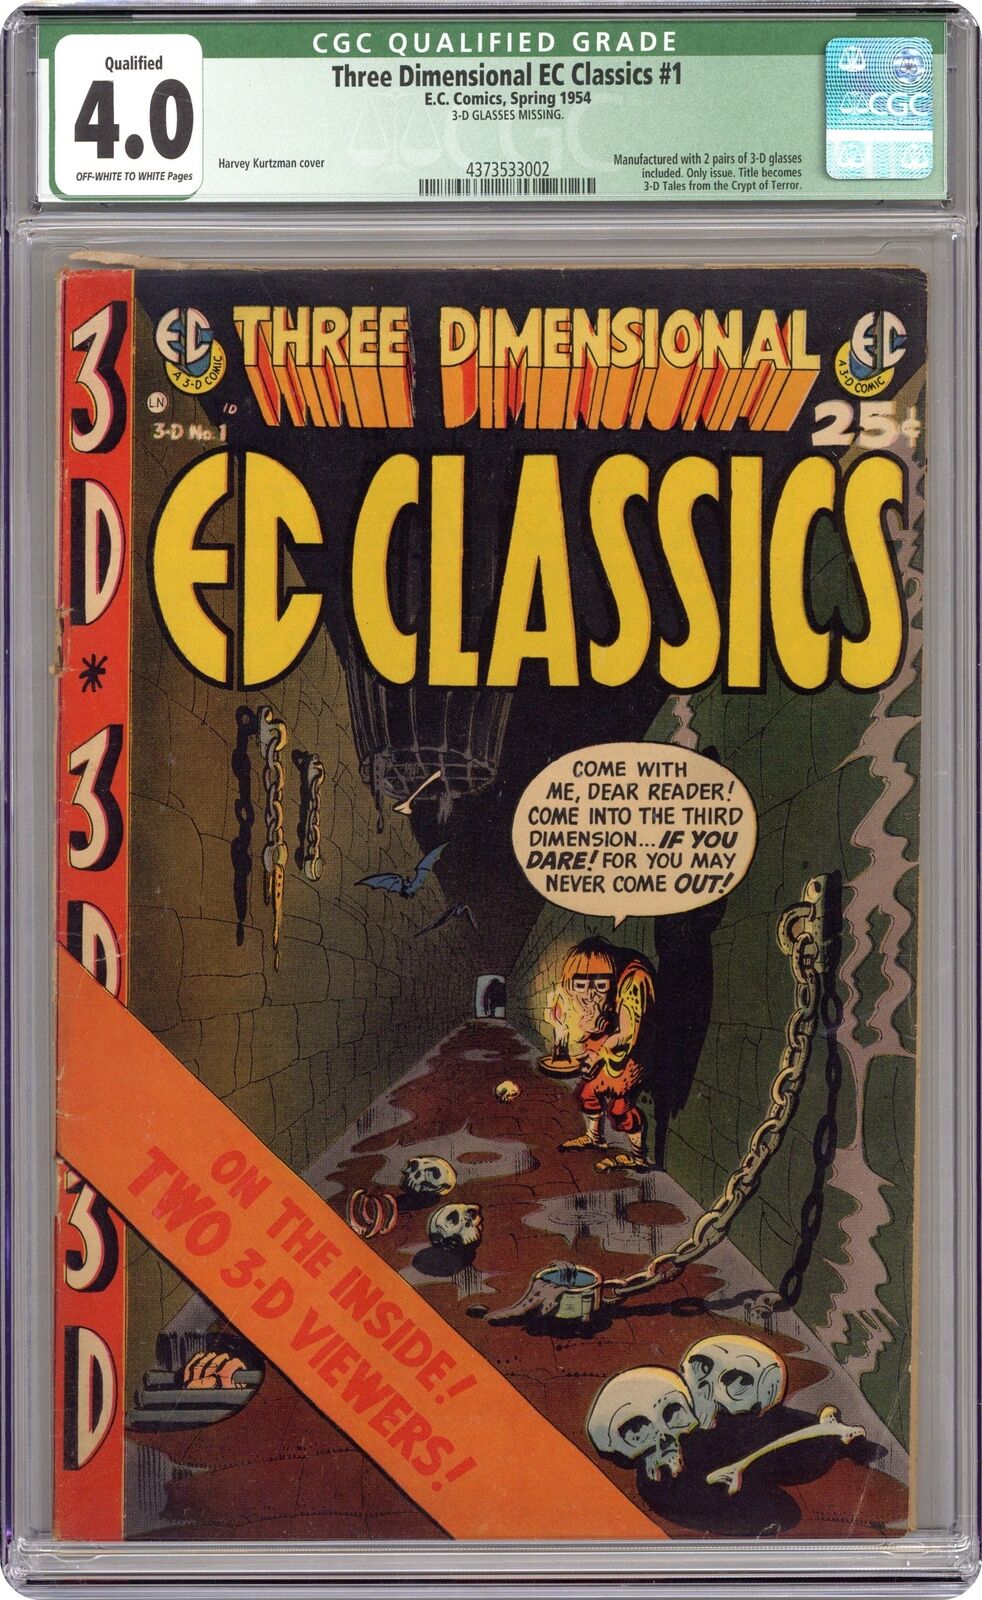 Three Dimensional E. C. Classics #1 CGC 4.0 QUALIFIED 1954 4373533002